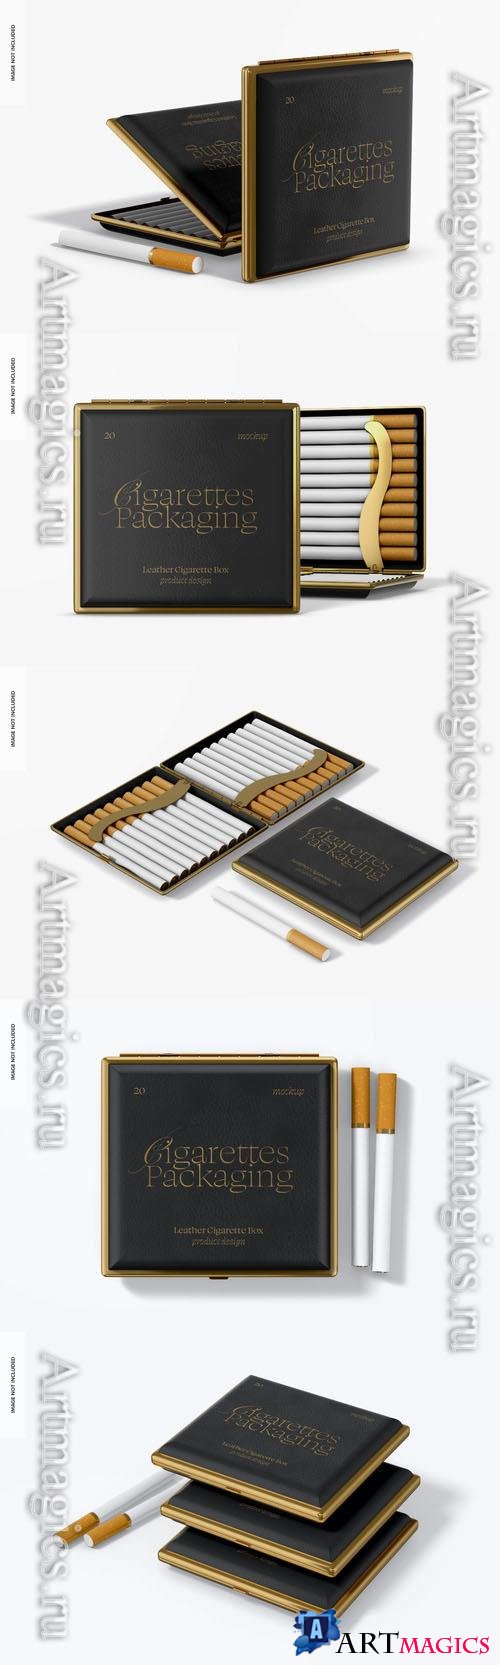 Leather cigarette box psd template mockup design